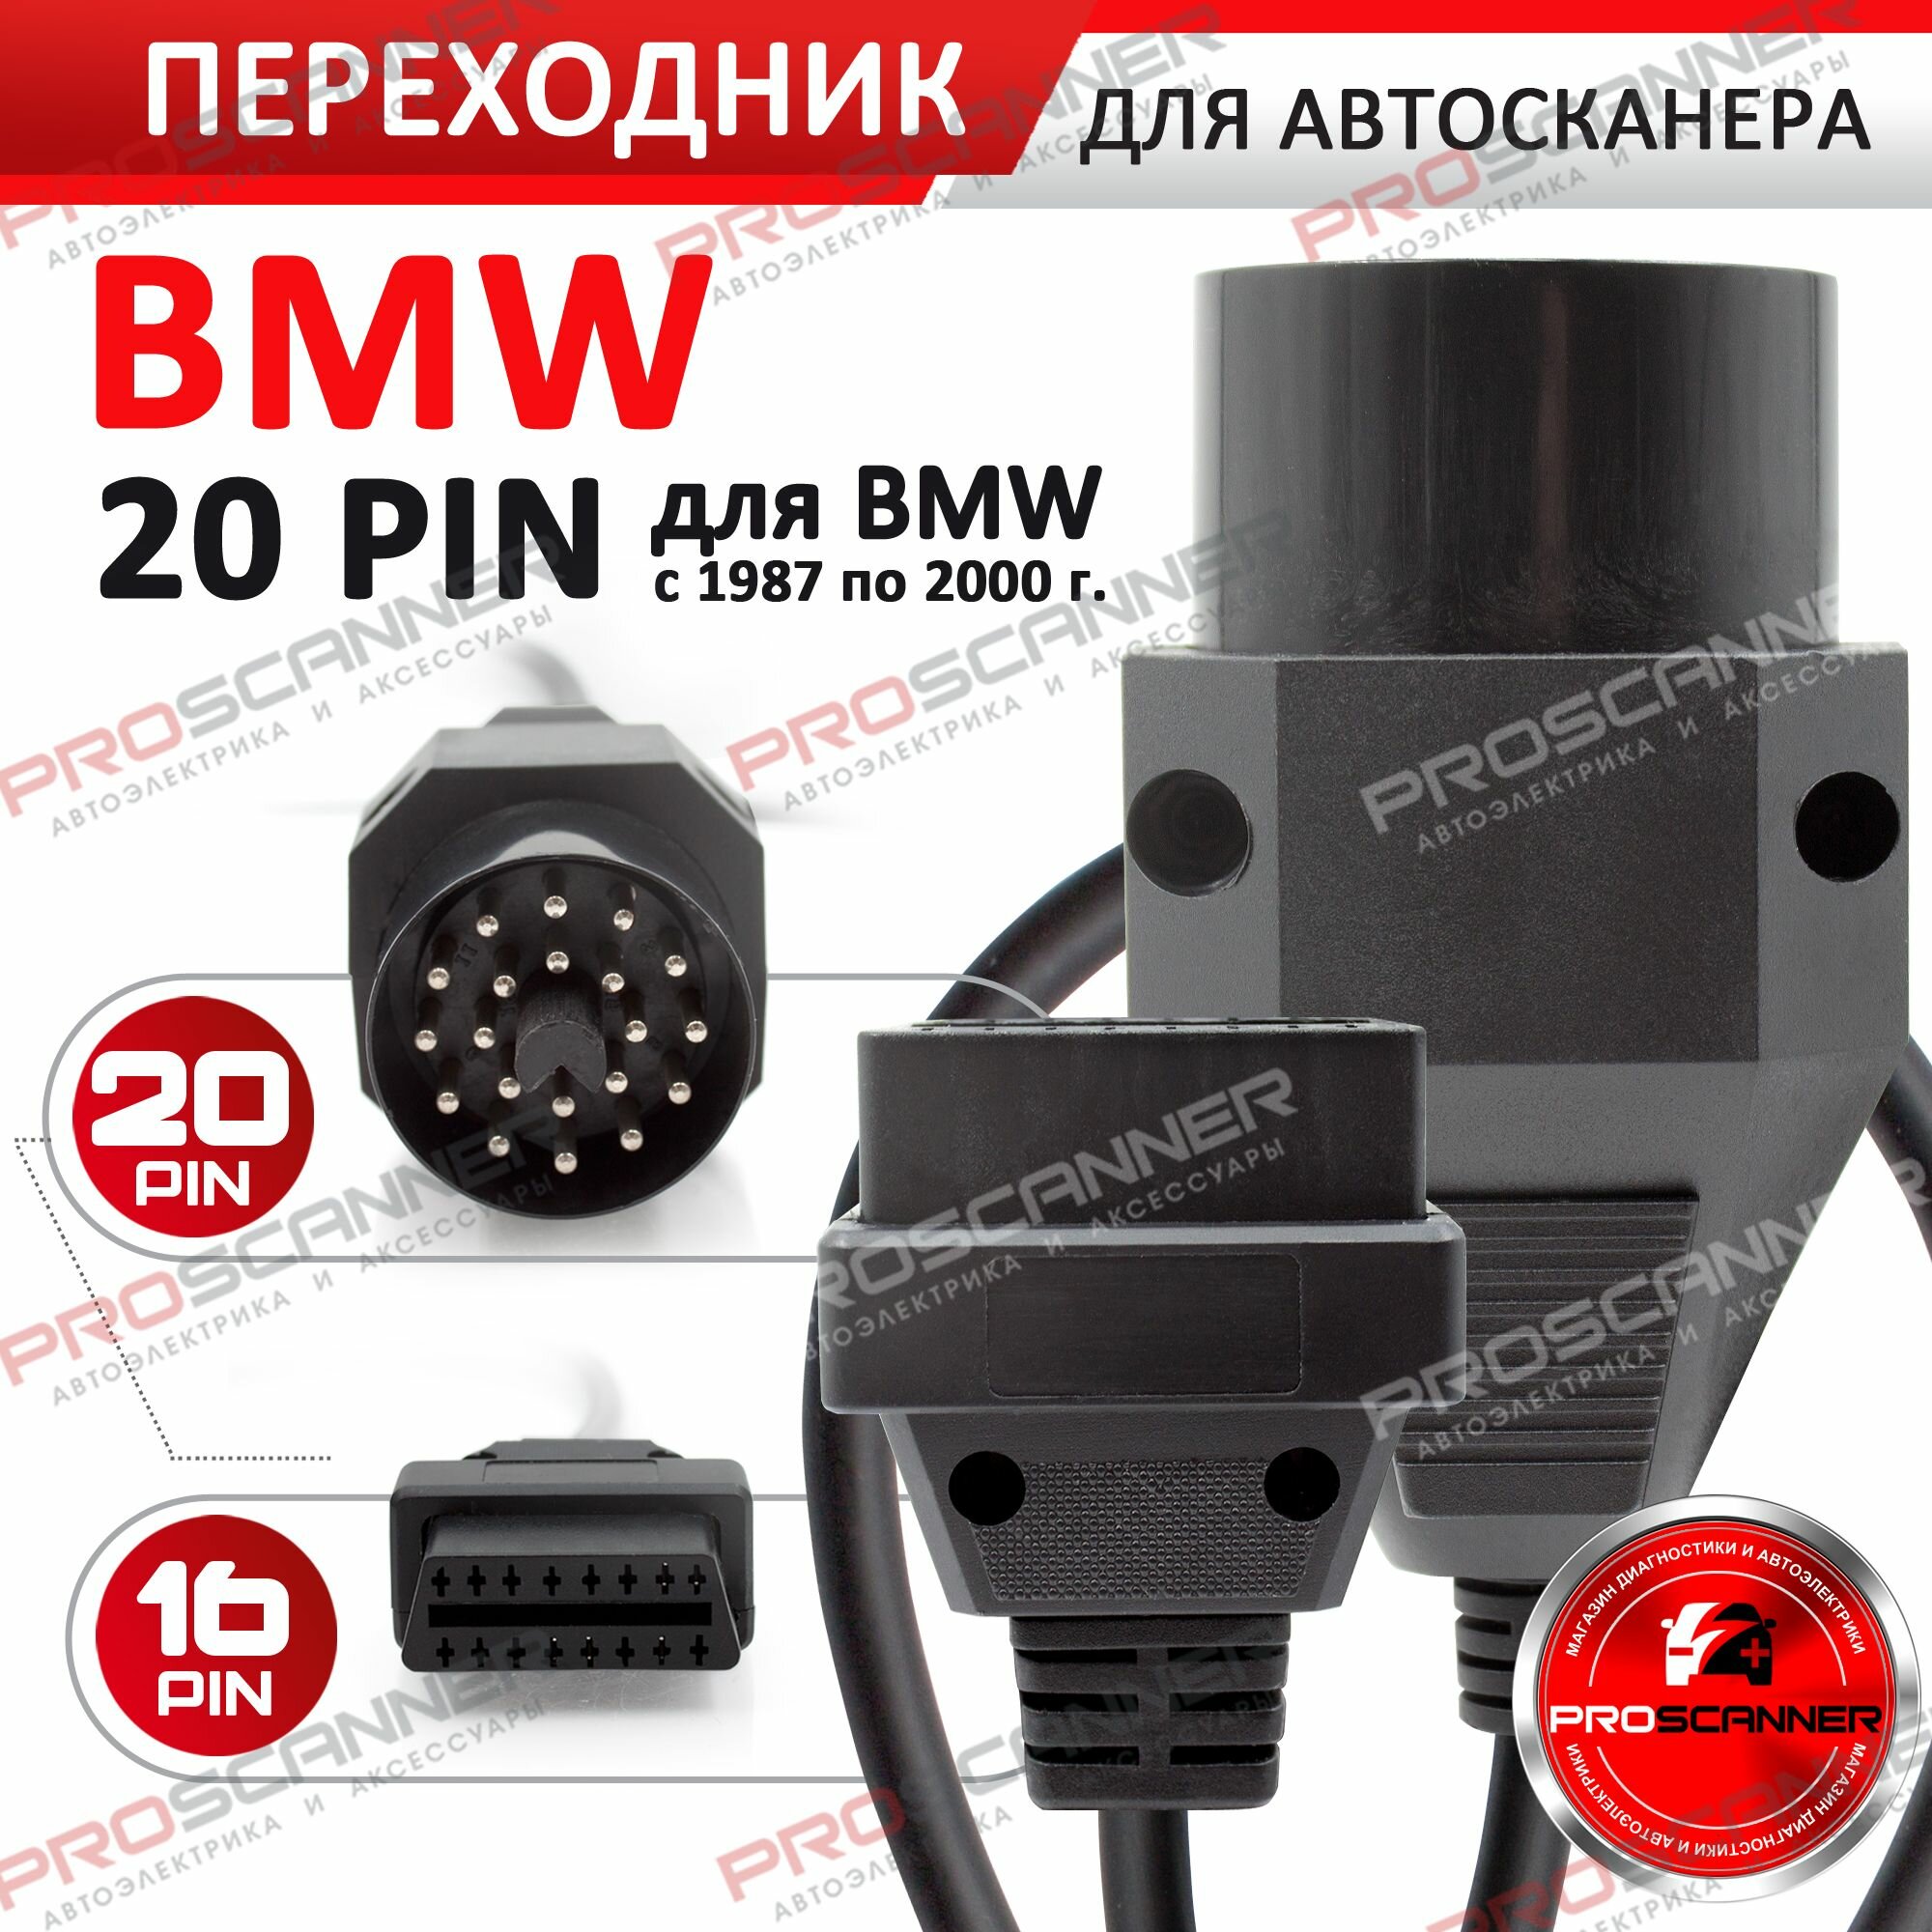 Переходник для автосканера BMW 20 PIN / Шнур диагностический для автосервиса